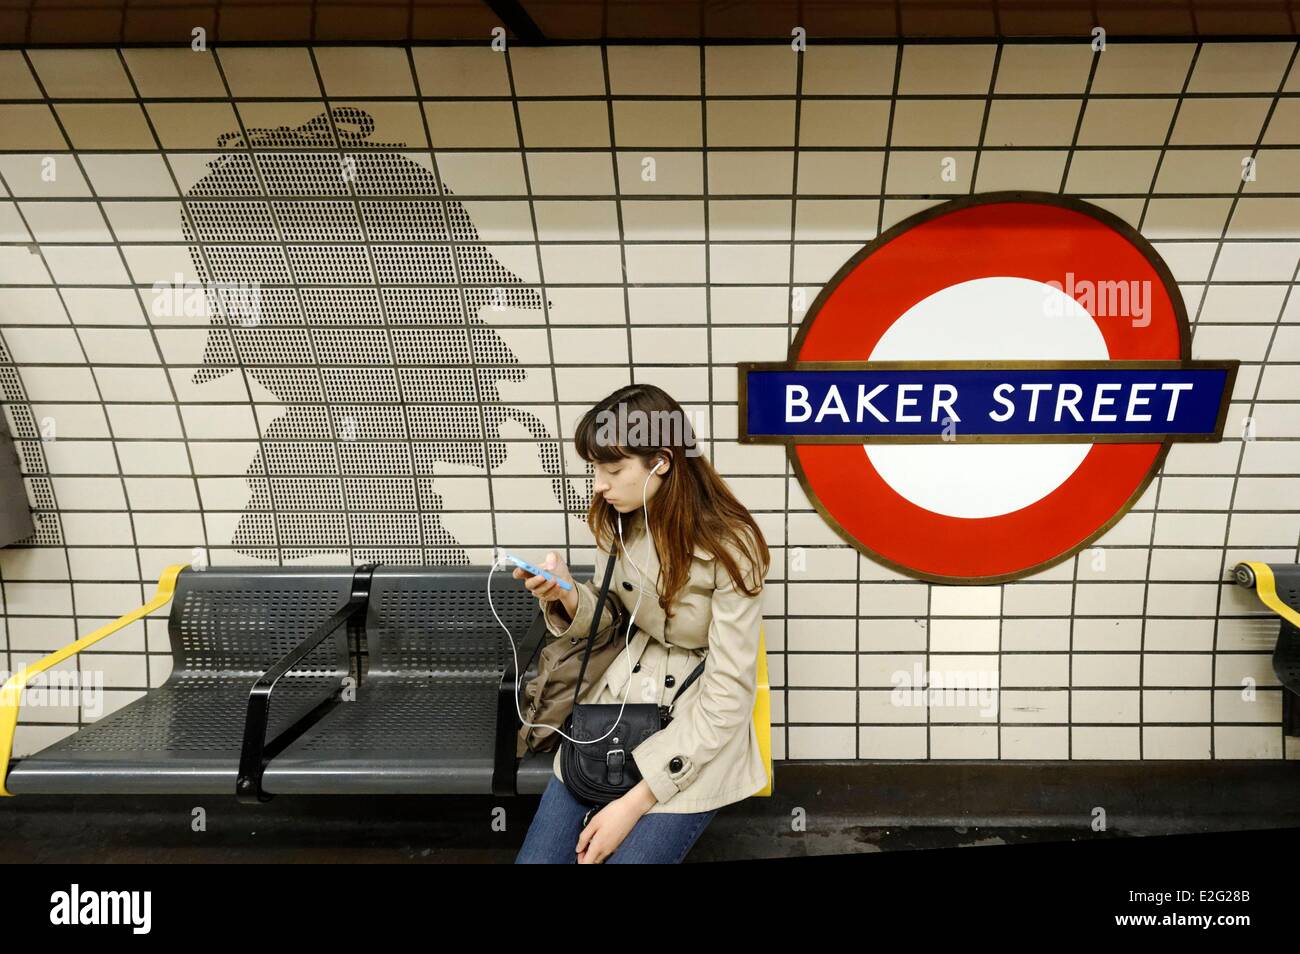 Regno Unito London Marylebone piastrelle raffigurante Sherlock Holmes e il tubo il logo presso la stazione della metropolitana di Baker Street (il logo ½ Foto Stock